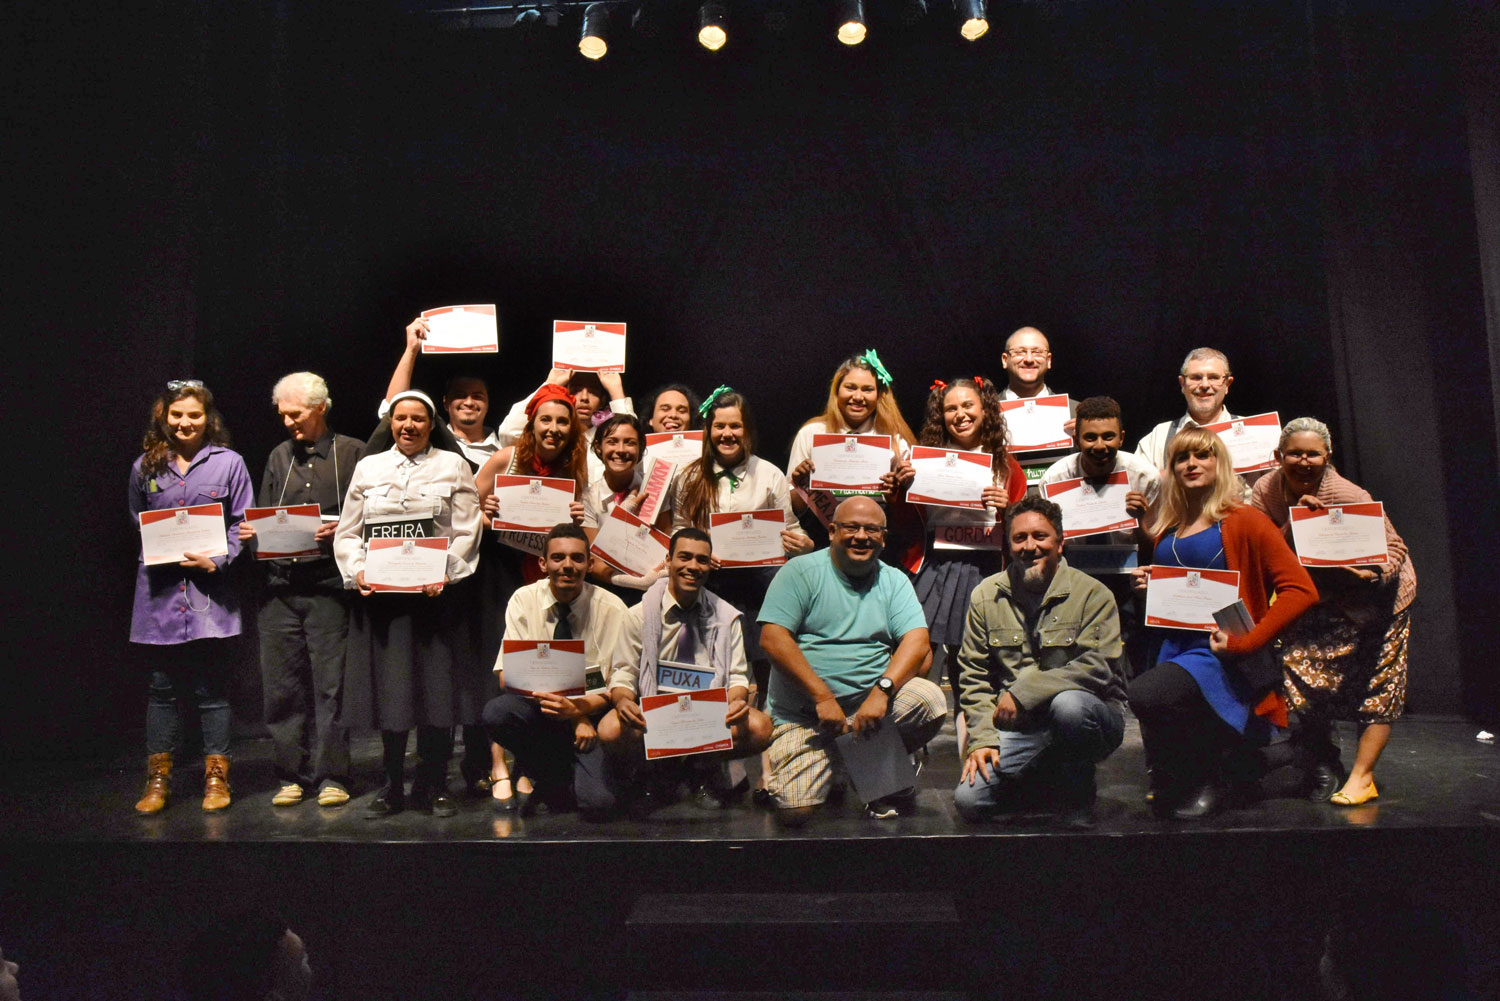 2018_08_02_Entrega_Certificados_Curso_Teatro-CLARILDO-9883